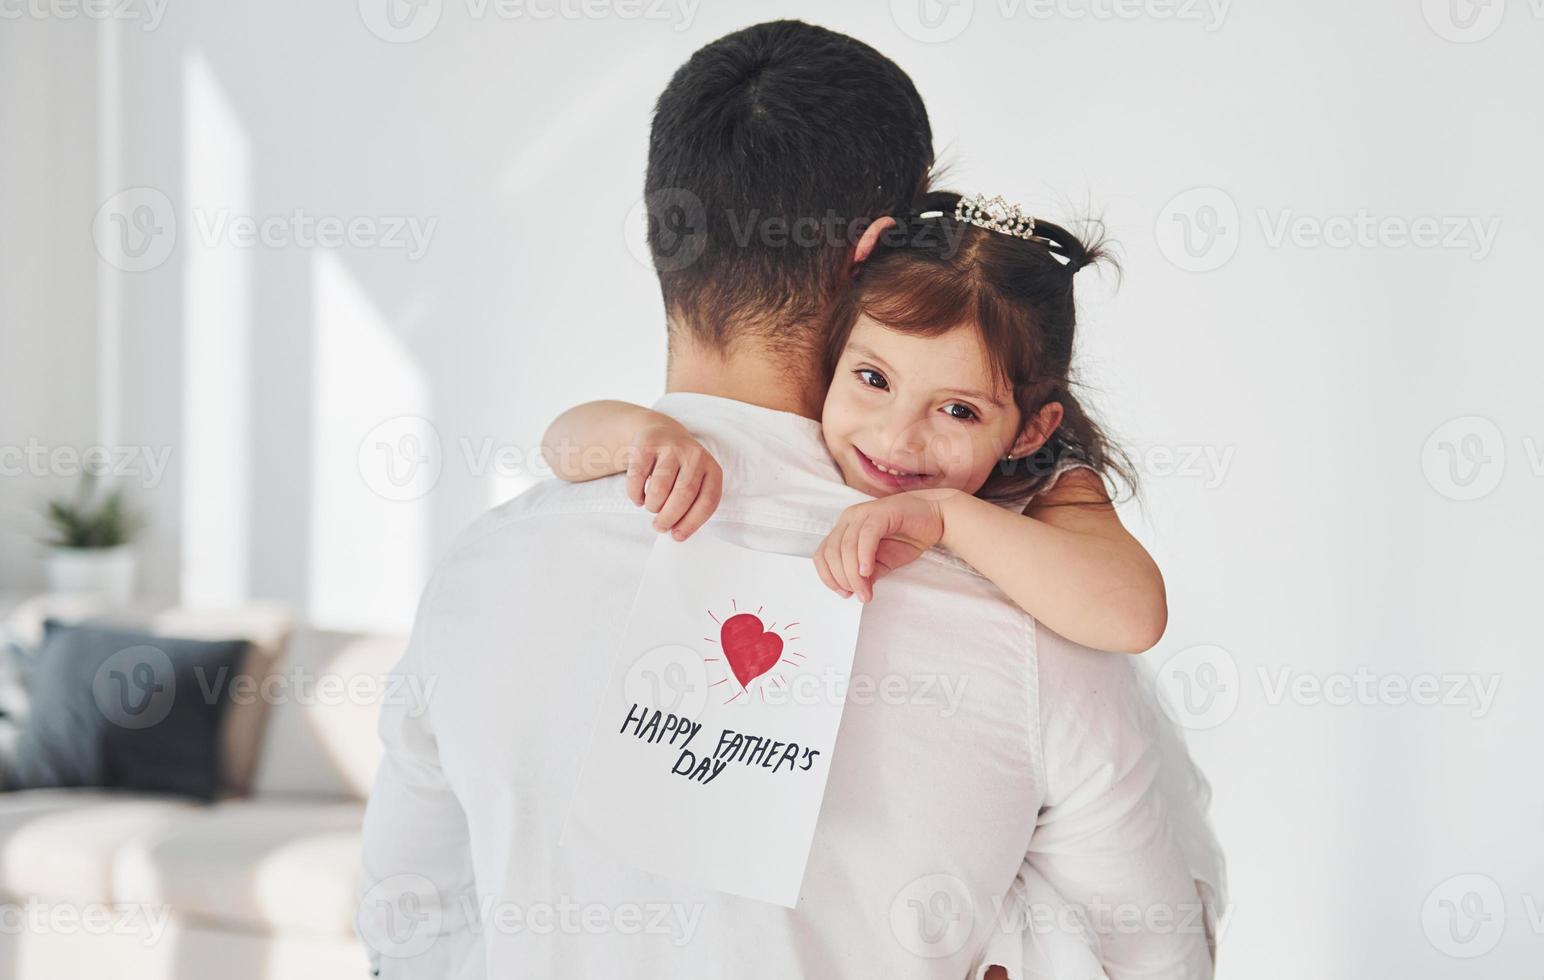 feliz Día del Padre. la hija le hace una sorpresa a papá al darle una postal con el corazón foto